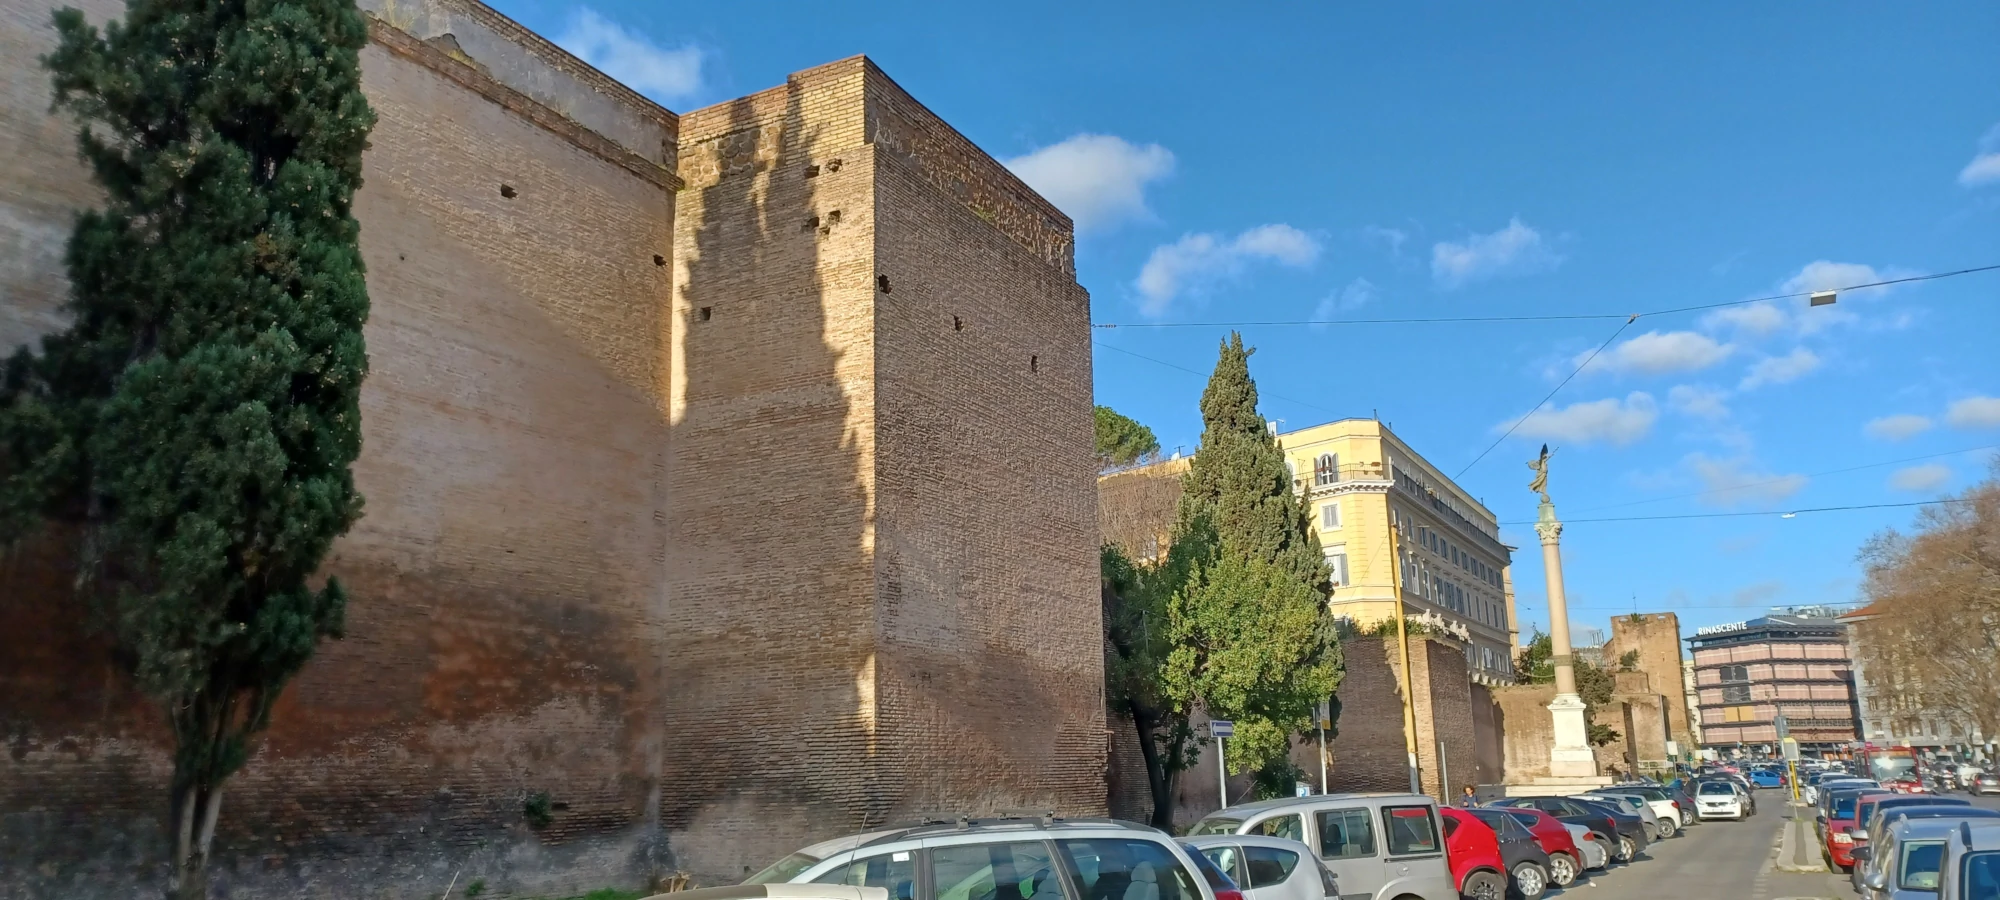 Murallas y monumento en el lugar de la brecha de Porta Pia